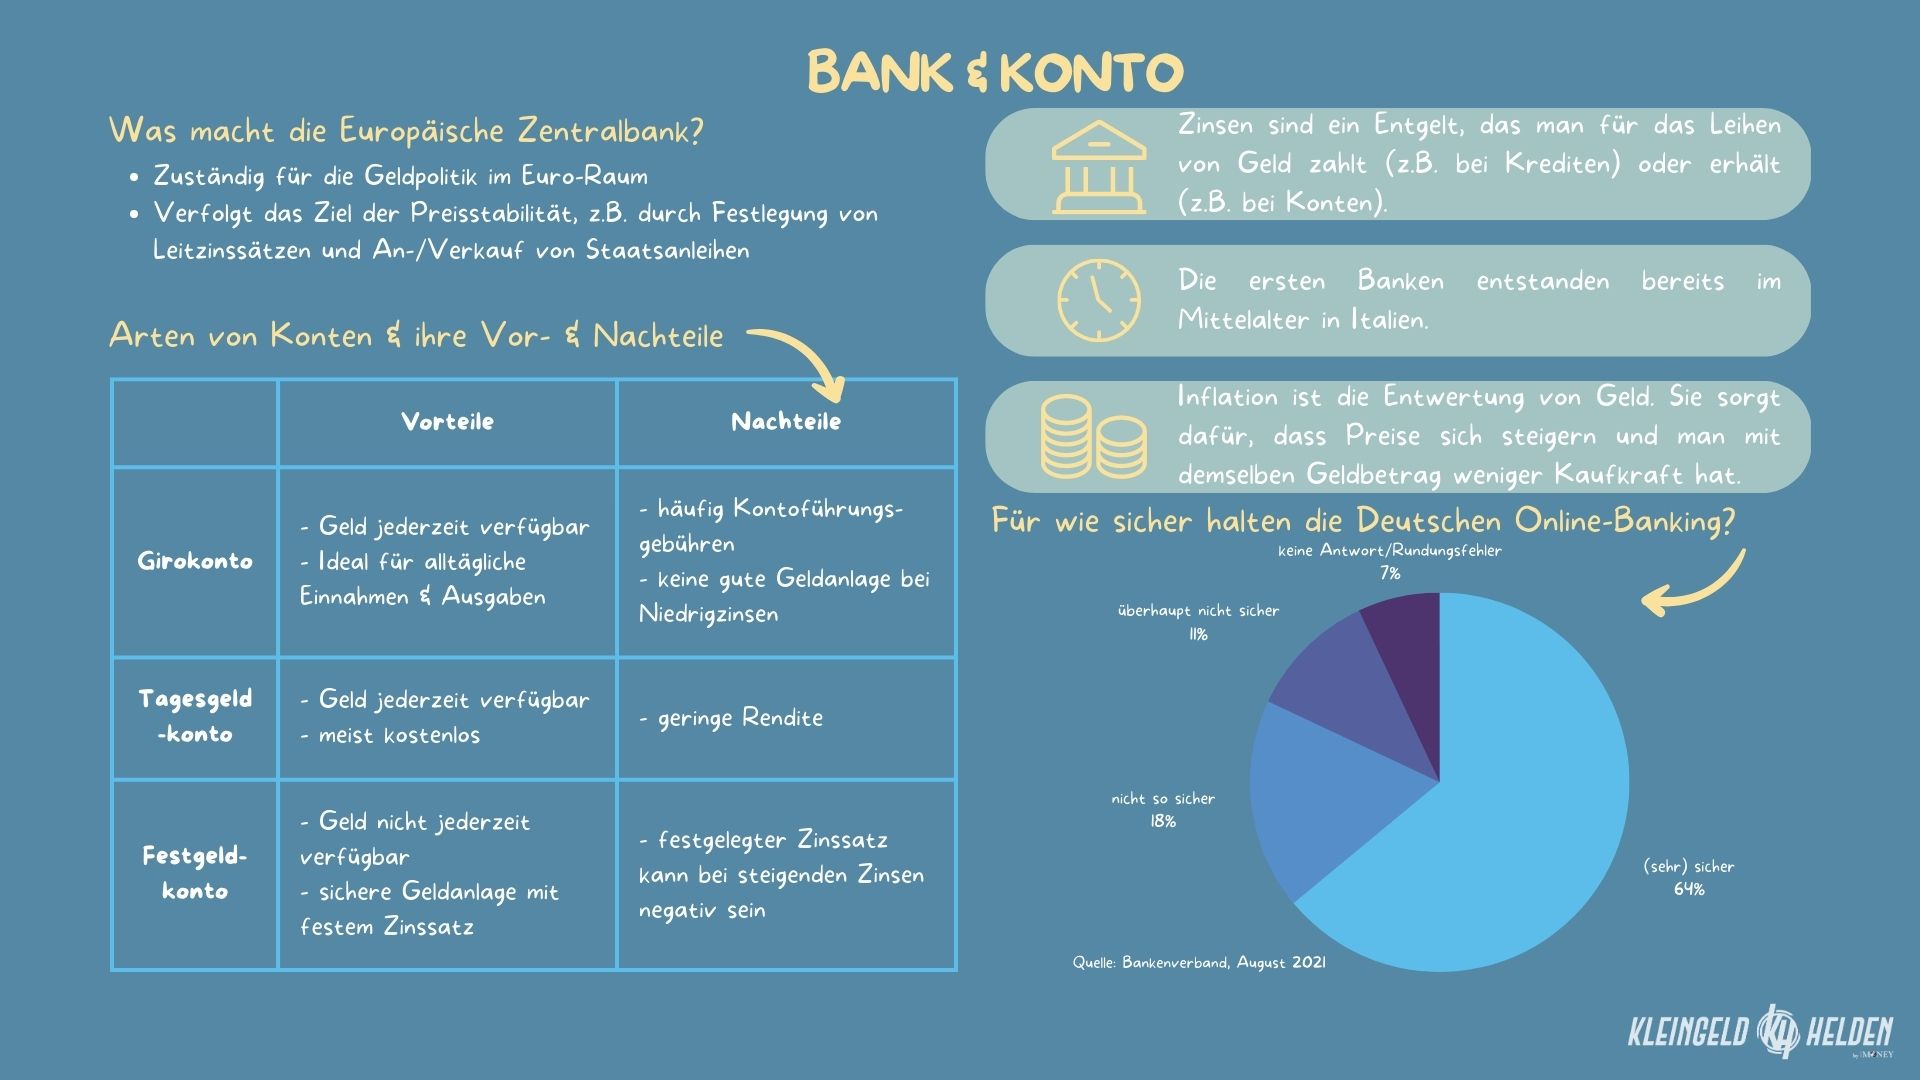 Infografik zu Bank und Konto: EZB, Konten Vor- und Nachteile, Inflation, Zinsen, Online-Banking